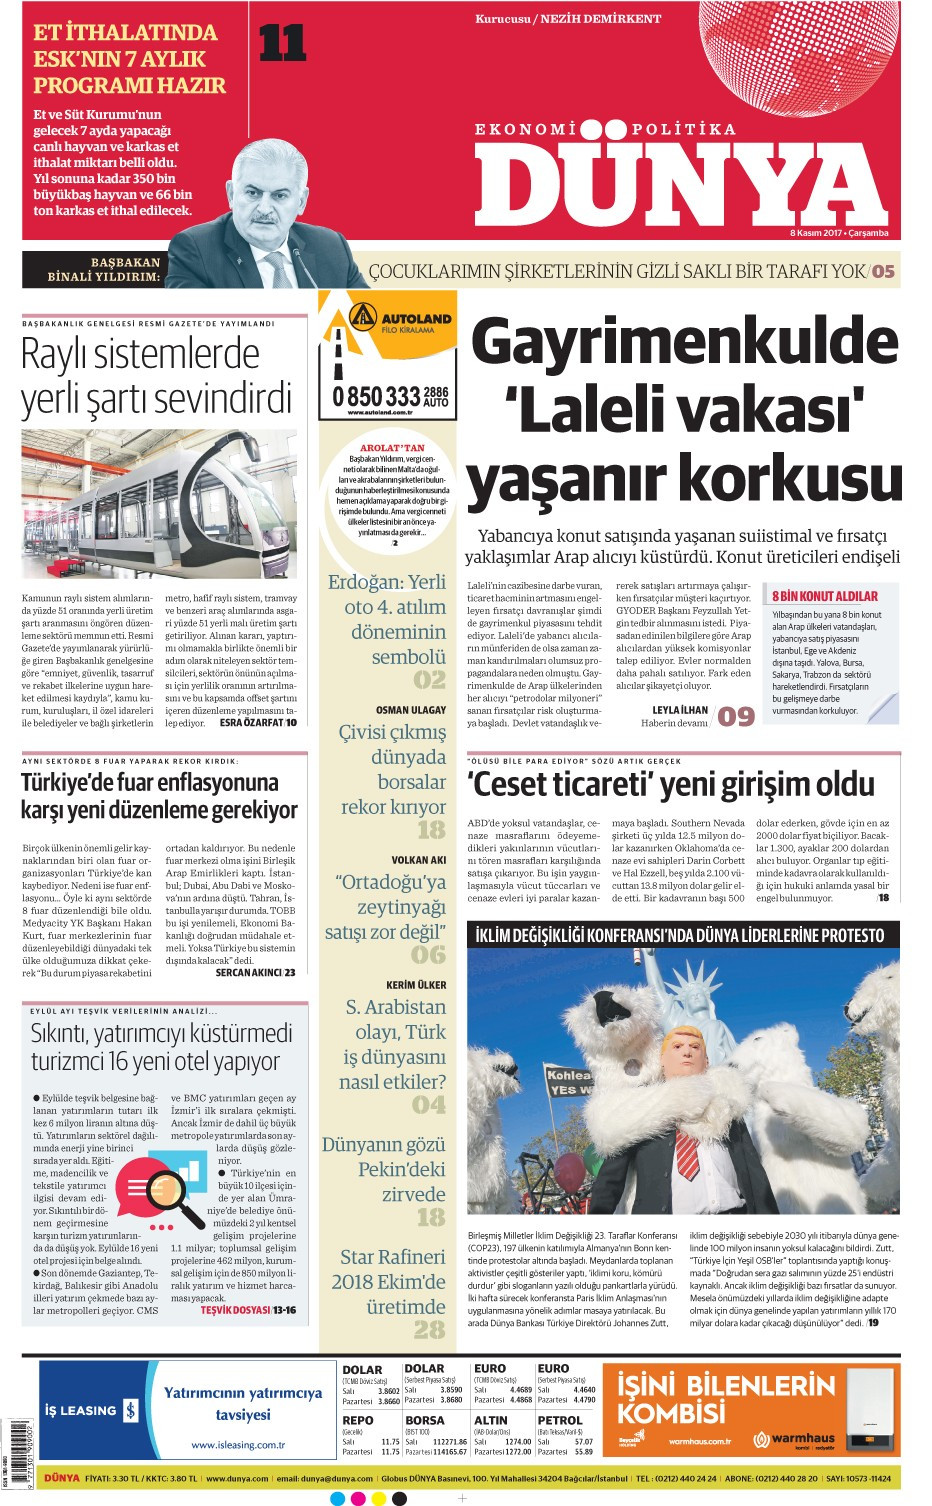 Günün gazete manşetleri (8 Kasım 2017) - Sayfa 1